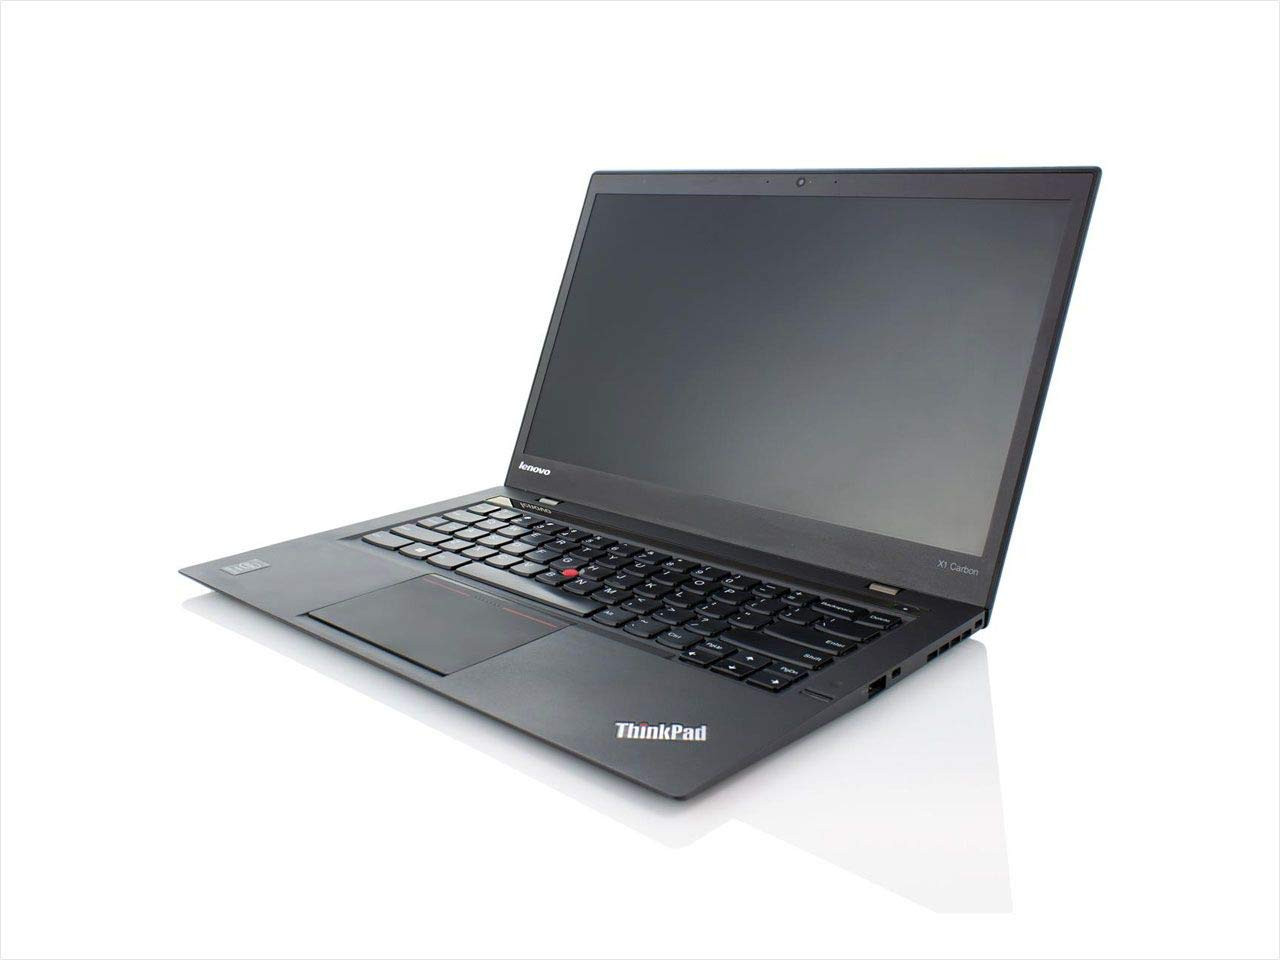 Lenovo ThinkPad X1 Carbon Core i5-4300U 1,9Ghz 8Gb 256Gb SSD HD+ Win 10 Pro